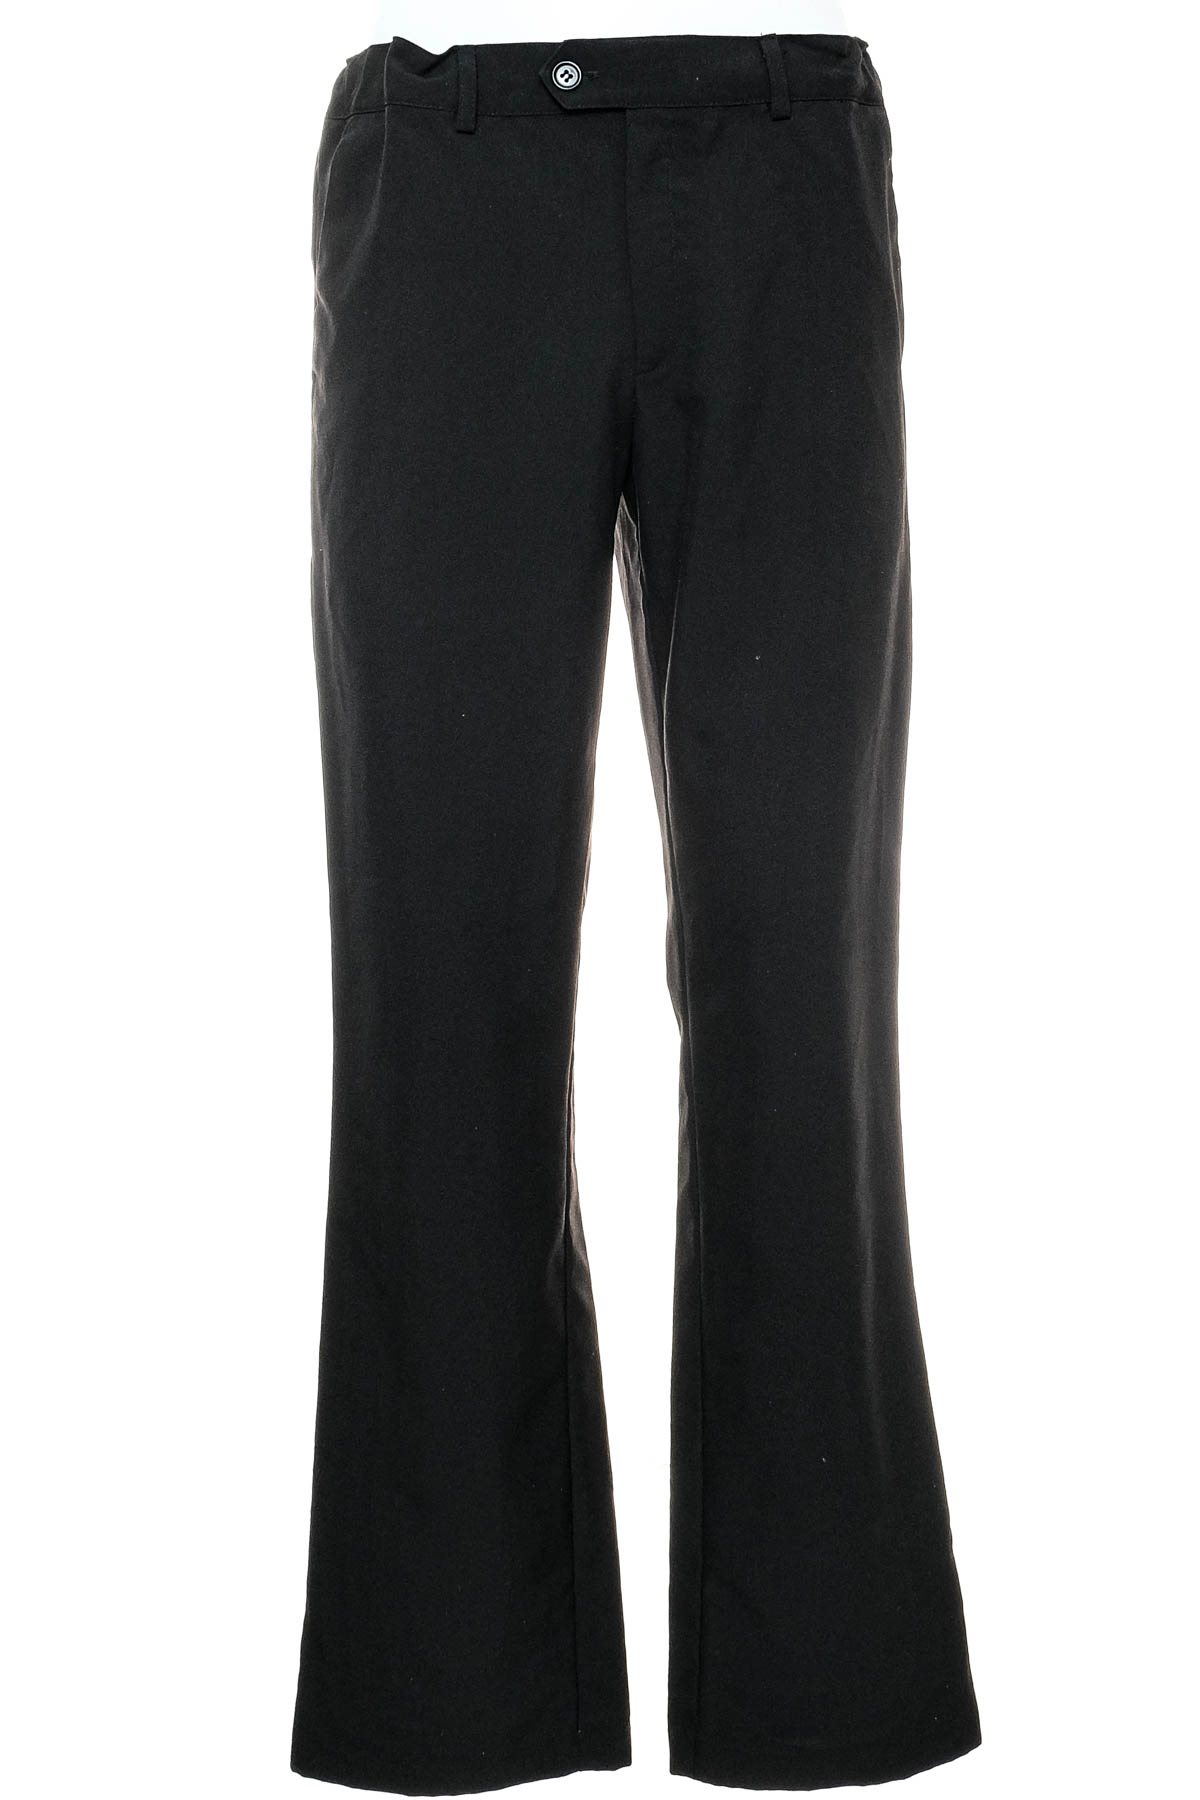 Spodnie dla chłopca - Bpc Bonprix Collection - 0